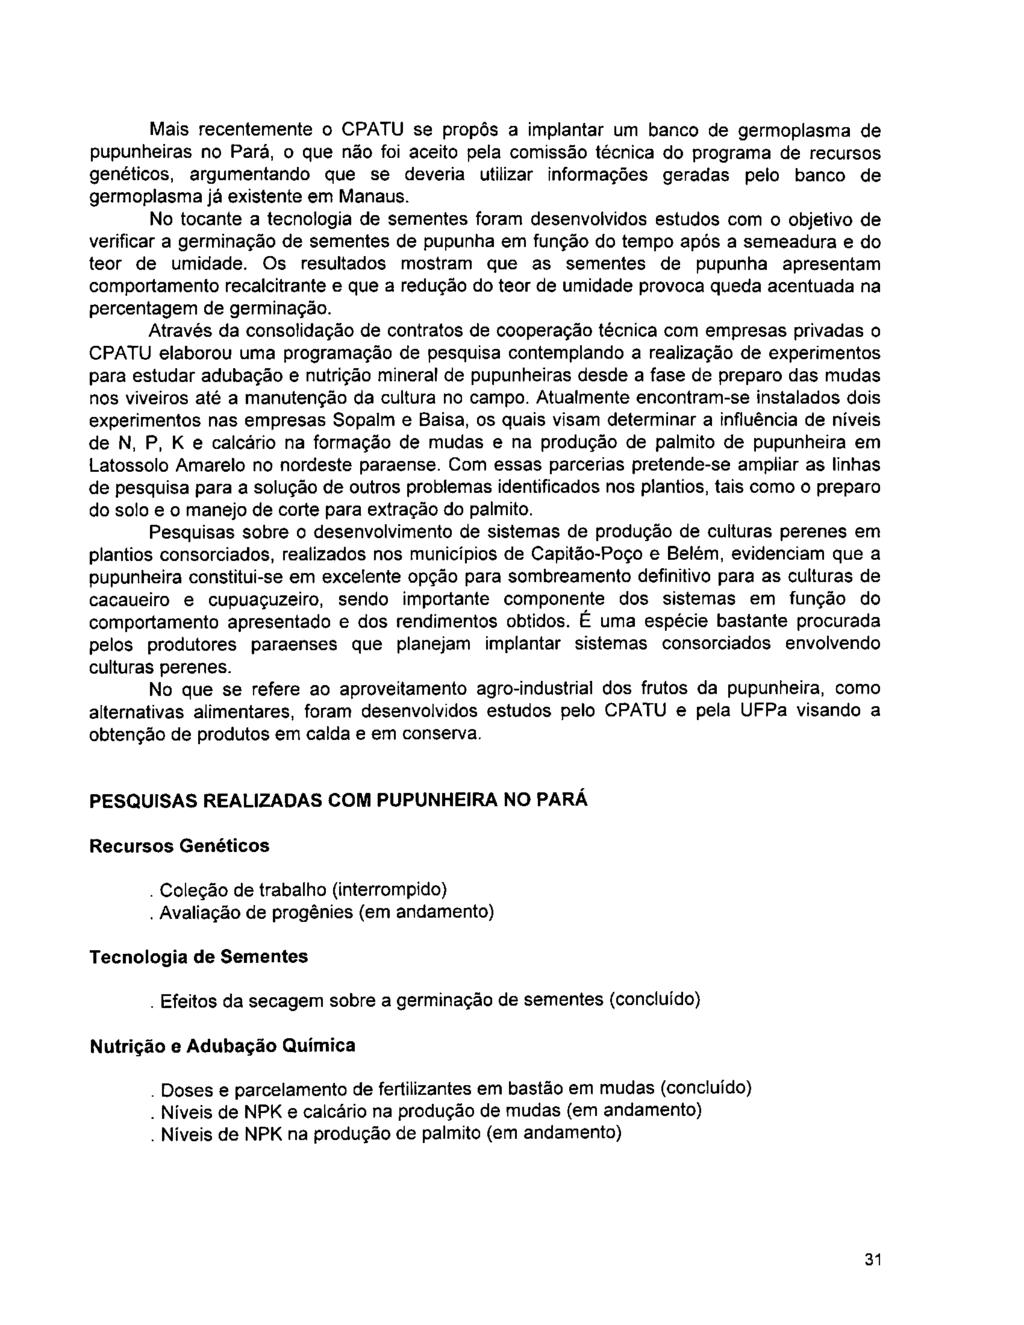 Mais recentemente o CPATU se propôs a implantar um banco de germoplasma de pupunheiras no Pará, o que não foi aceito pela comissão técnica do programa de recursos genéticos, argumentando que se